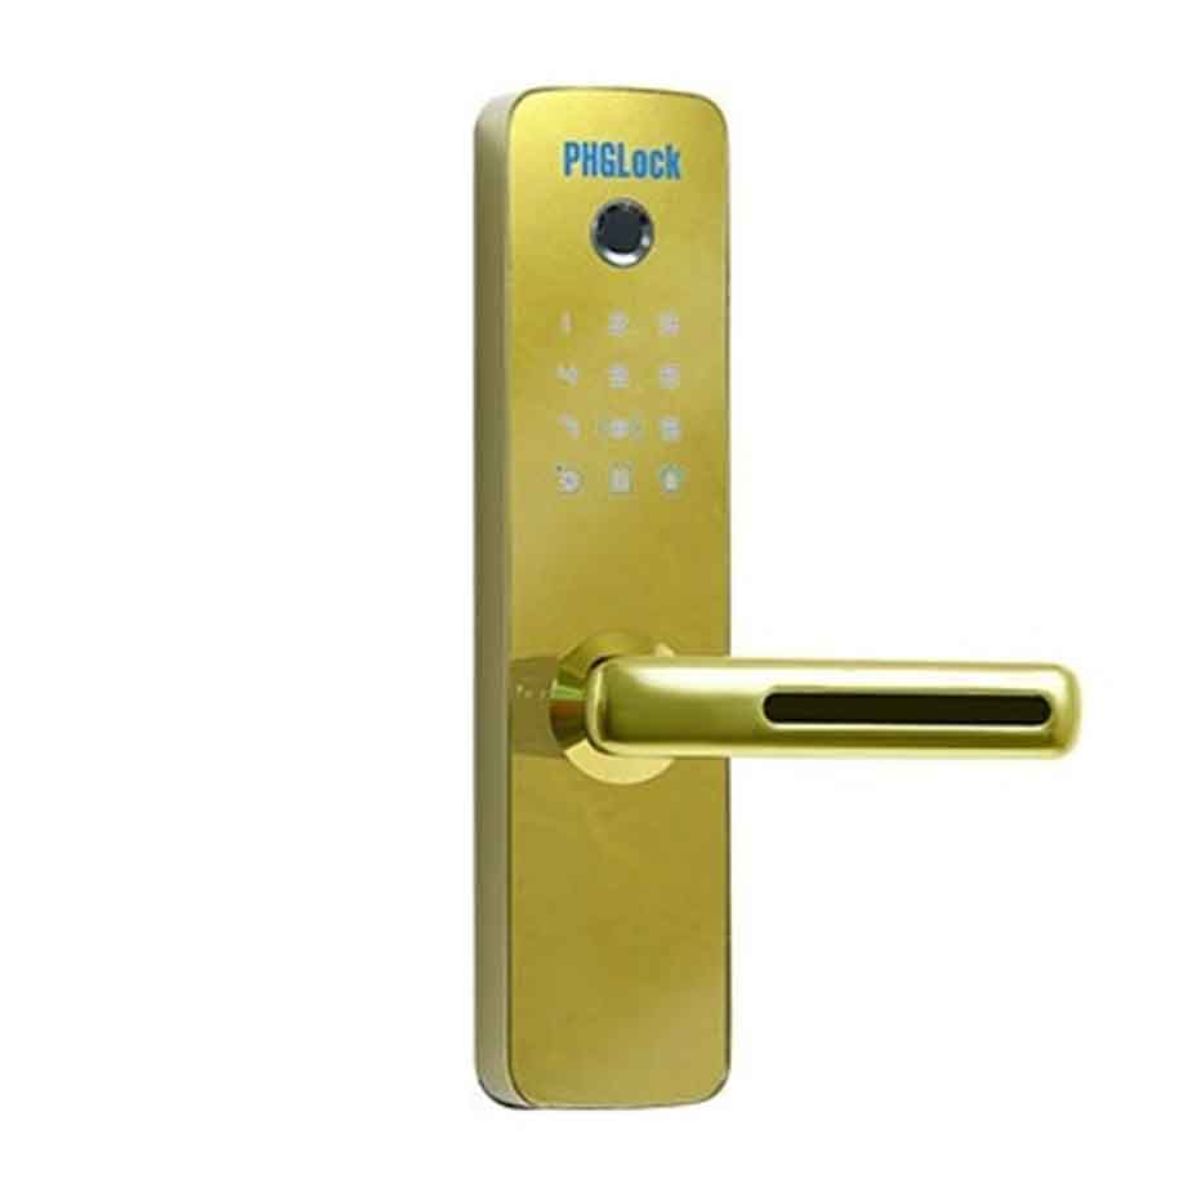 Khóa cửa vân tay cho căn hộ PHGLock FP7153 mica gương màu vàng 256 thẻ MI, 256 mật mã, 100 vân tay, chìa khóa cơ